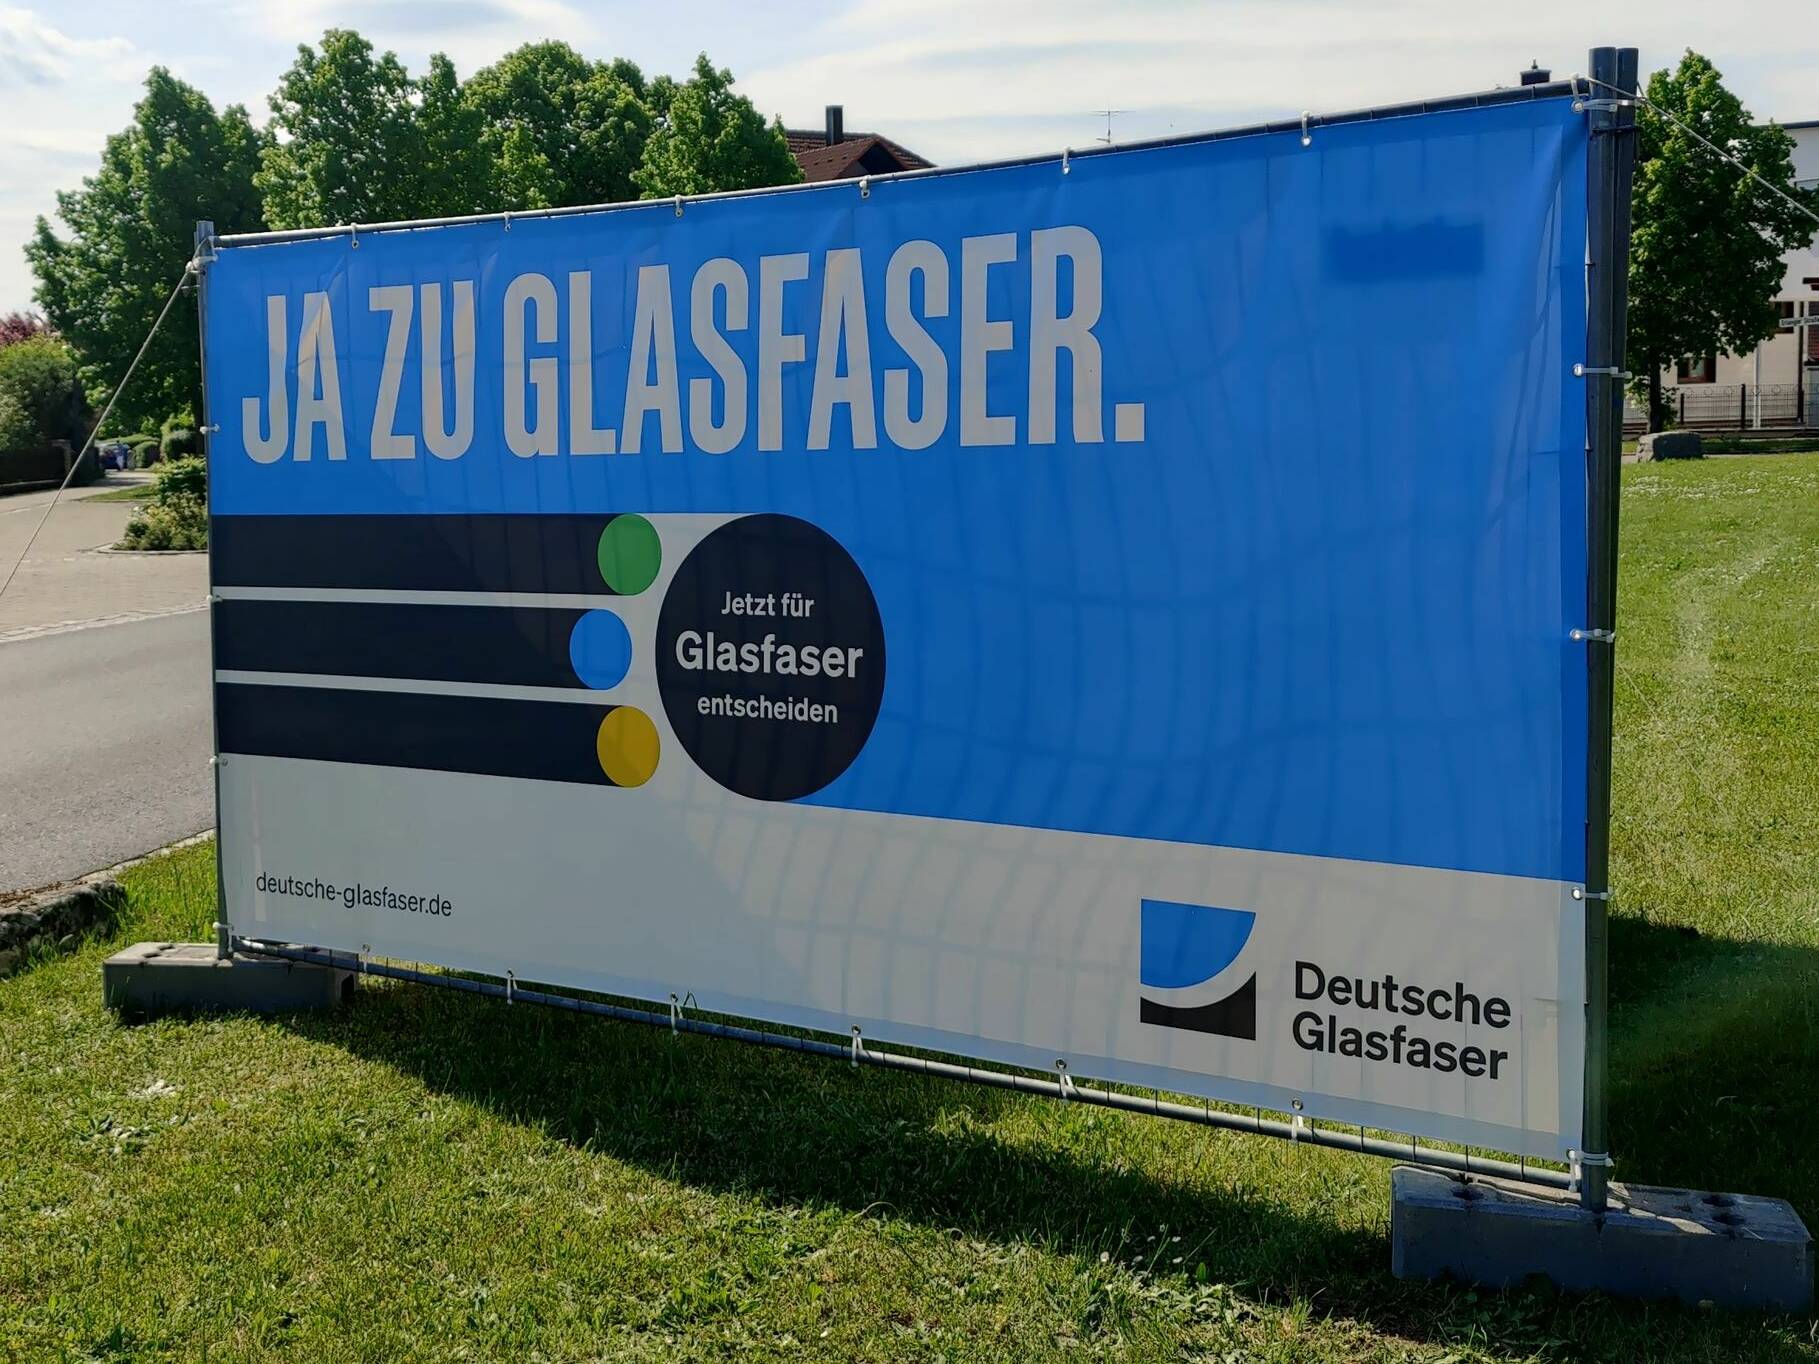 Glasfaserausbau in Heßdorf durch die Deutsche Glasfaser wird realisiert